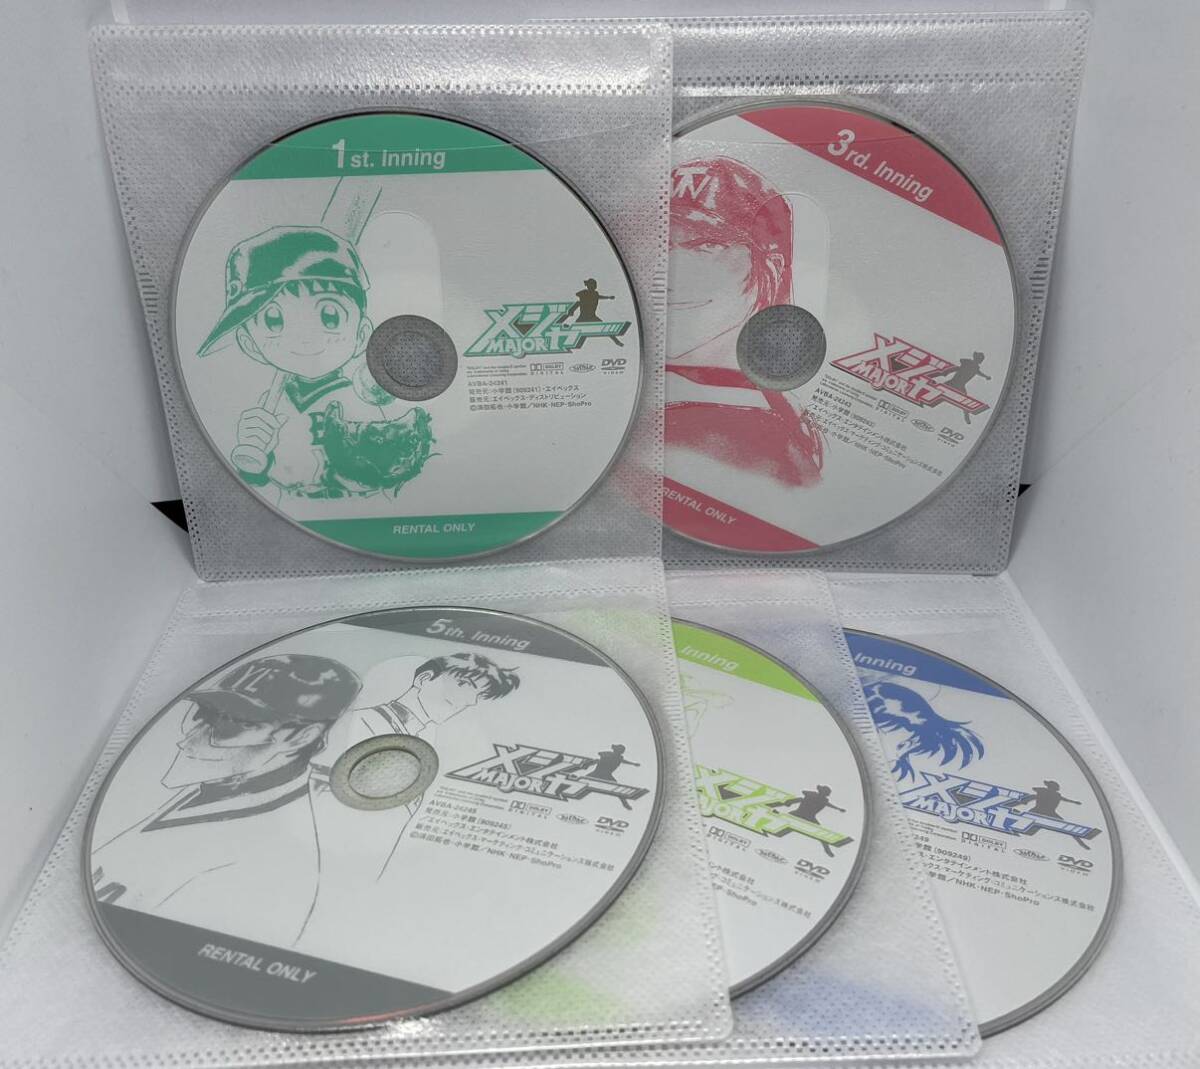 メジャー MAJOR 1期 DVD 全9巻 全巻セット レンタル落ち